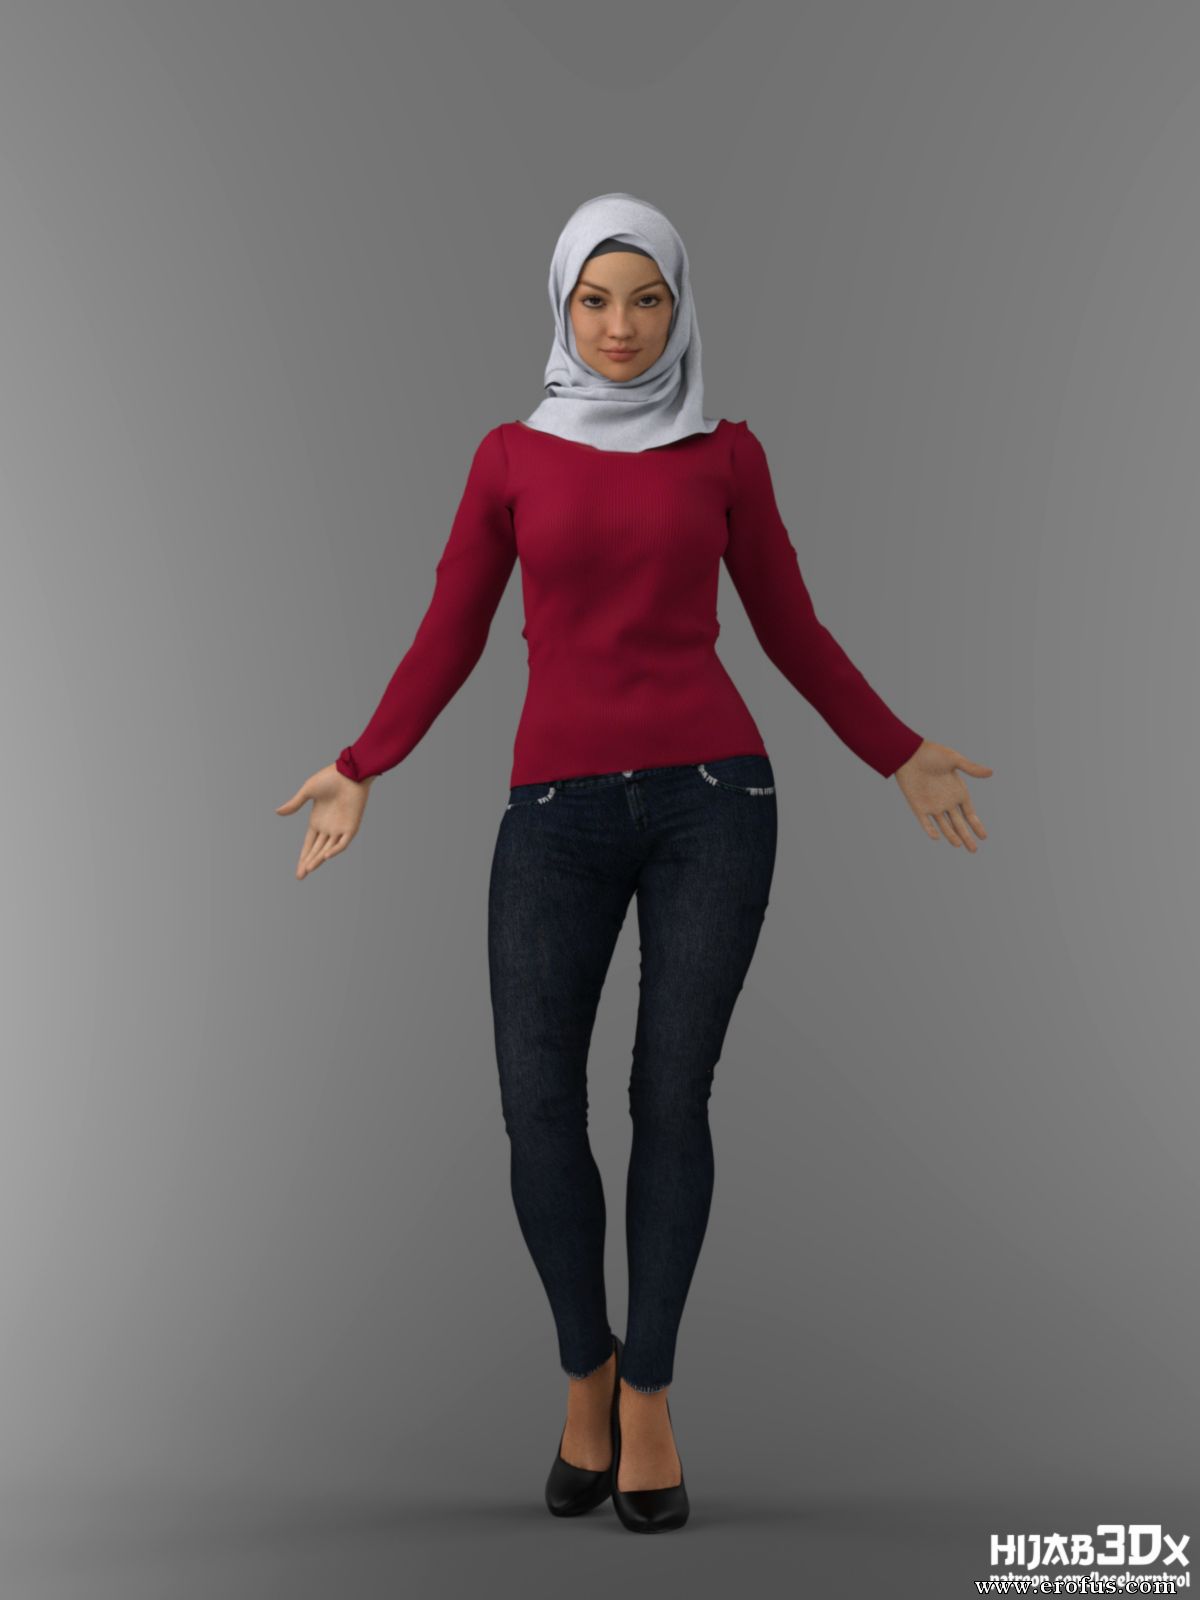 Losekorntrol массажист. Хиджаб 3dx хот. Hijab 3dx patron. Хиджаб 3dx 2022. Хиджаб 3dx 997.